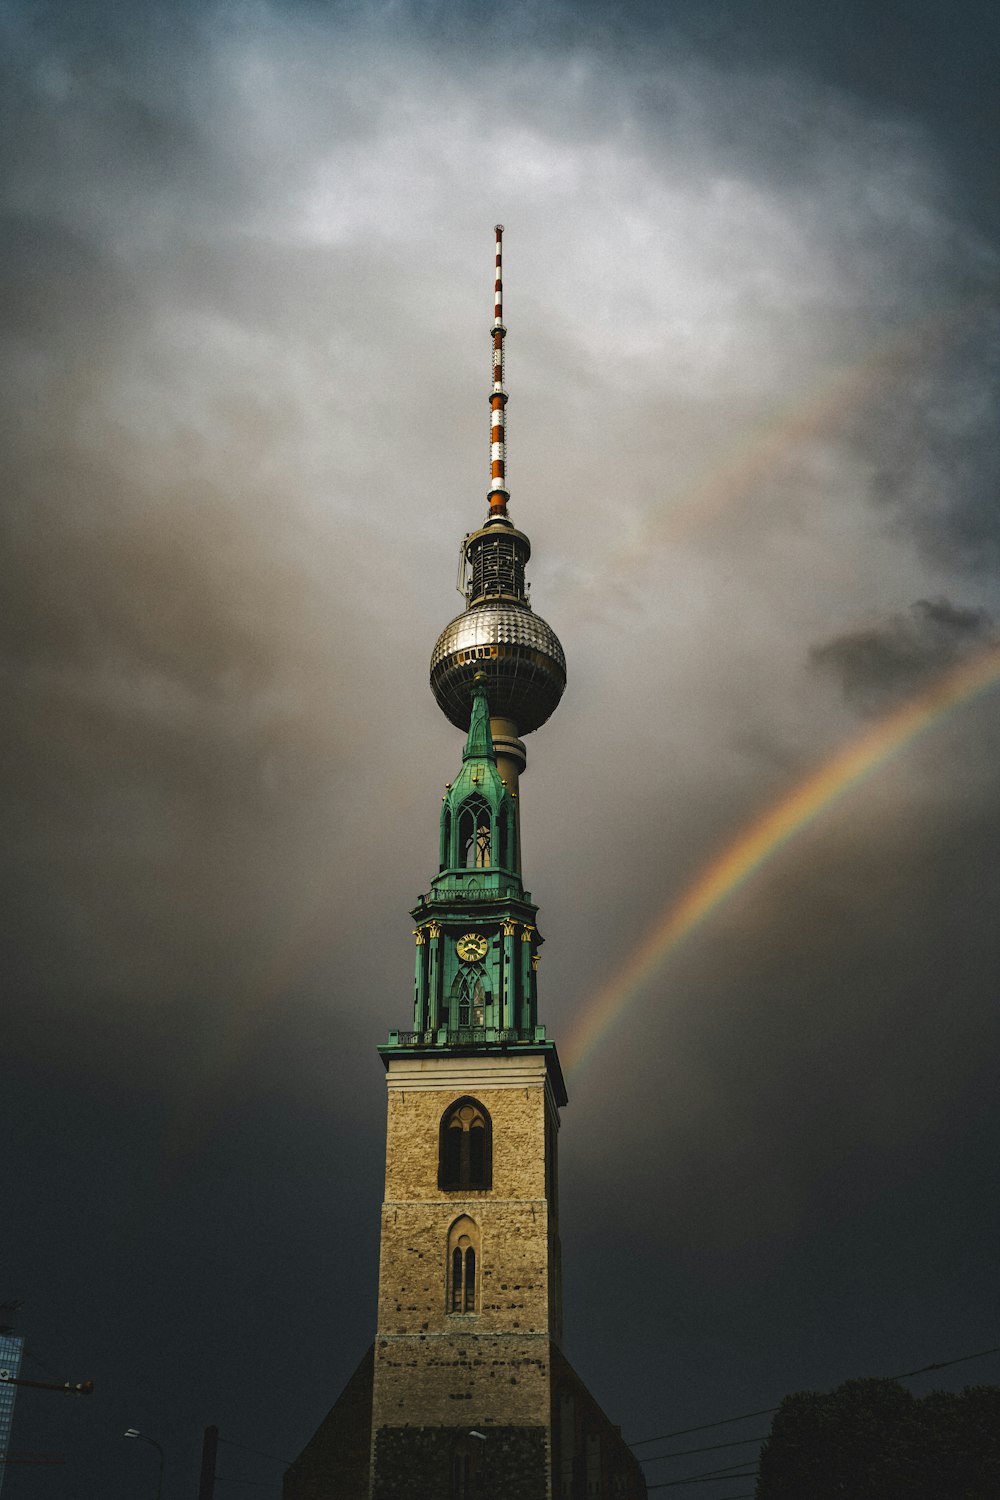 a rainbow over a tall tower